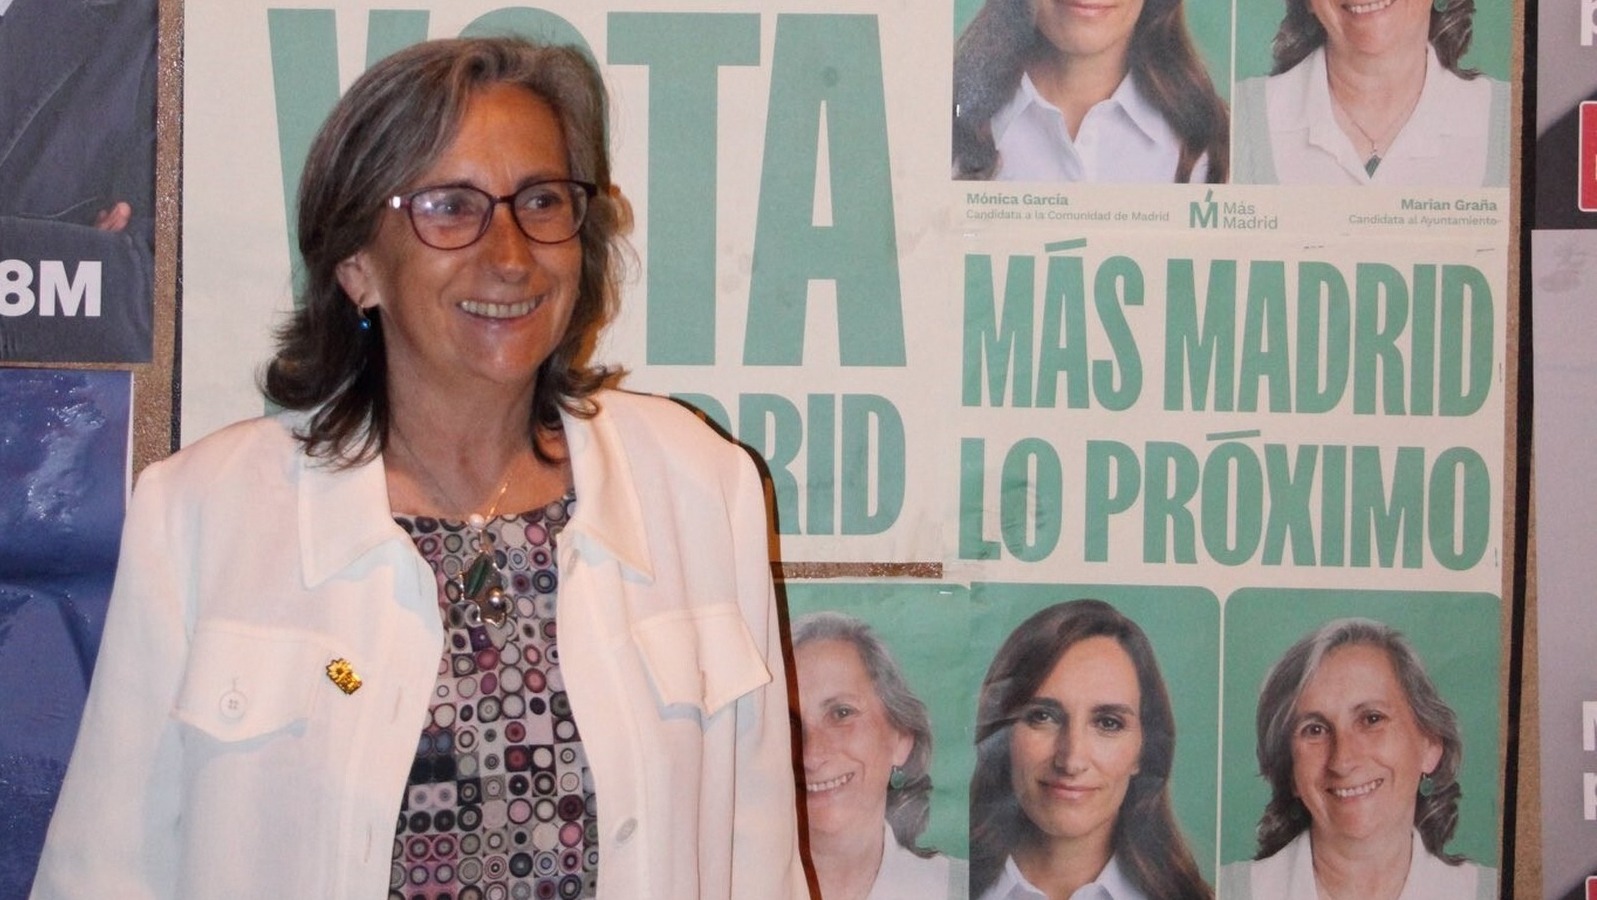 Más Madrid Boadilla presenta su programa centrado en un municipio más verde y saludable